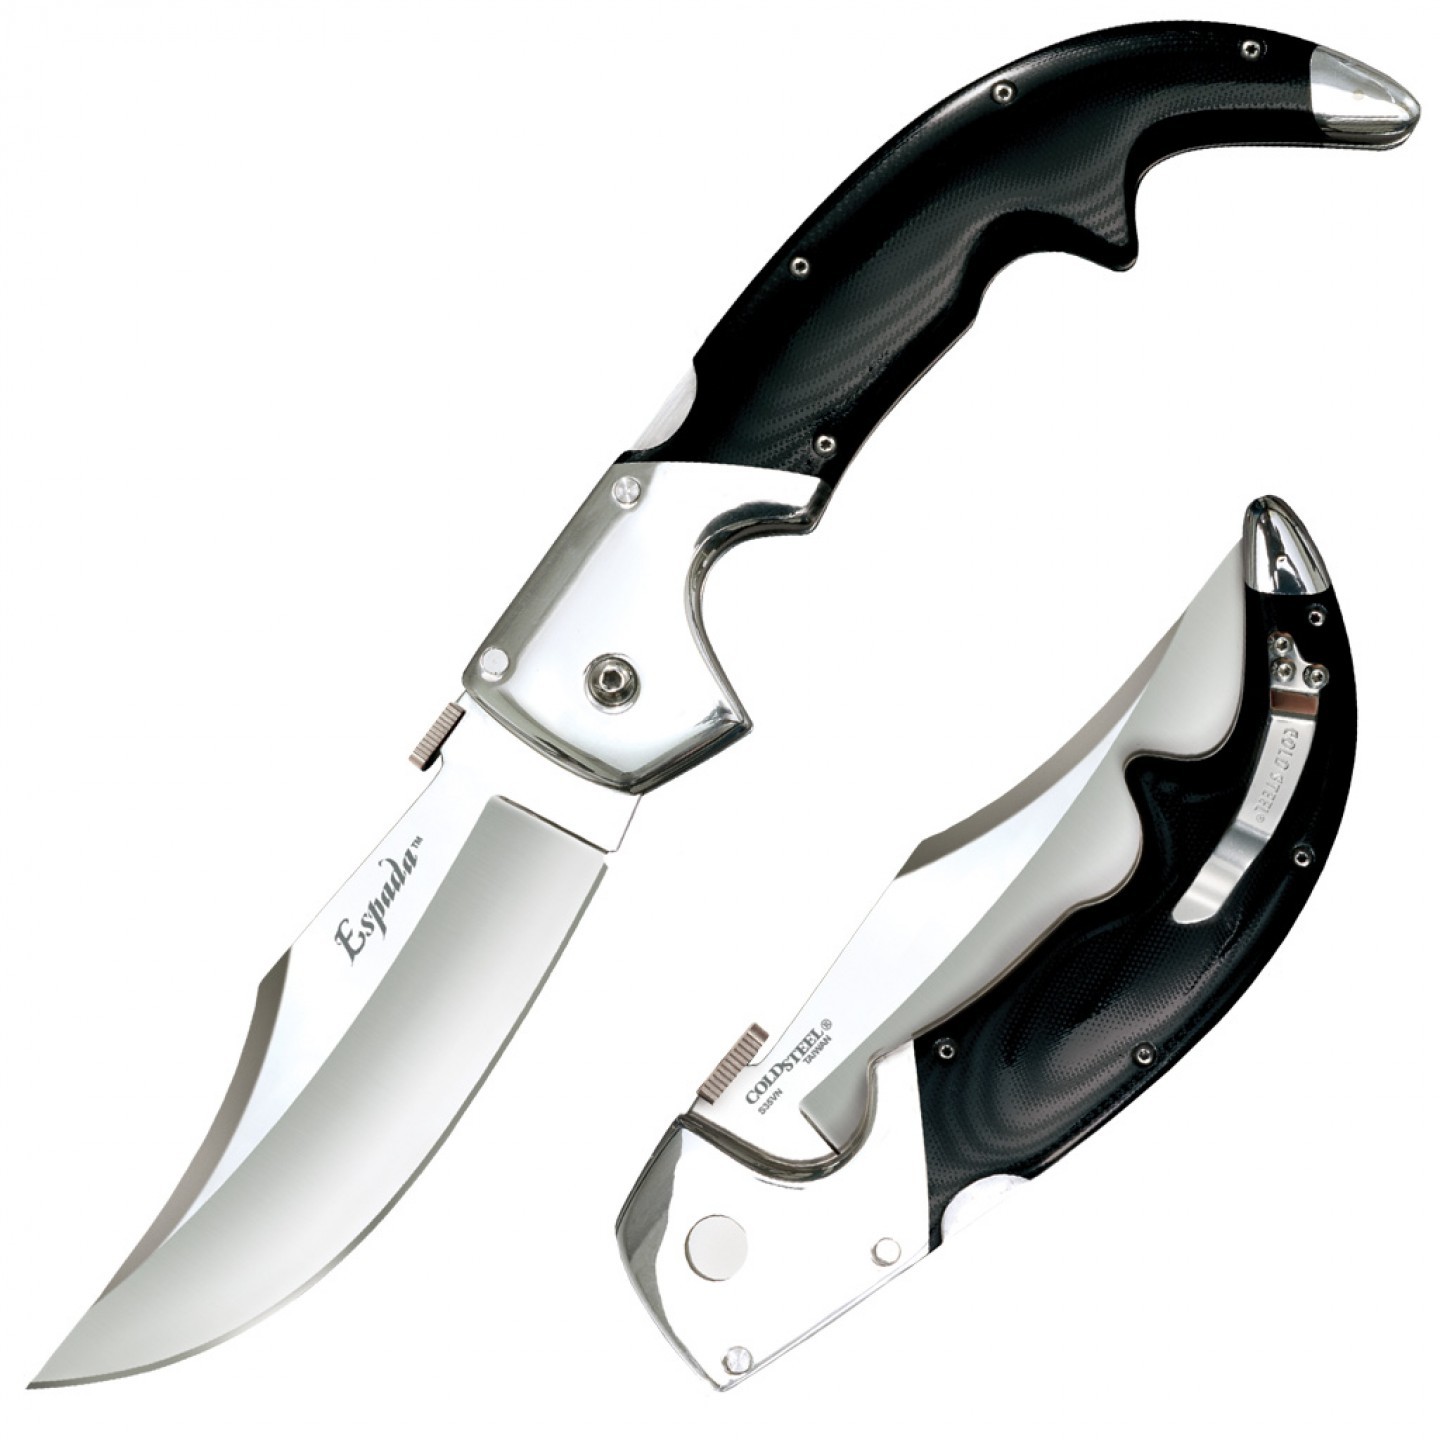 Складной нож Espada (Large) - Cold Steel 62MB, сталь CPM-S35VN, рукоять G10/Анодированный алюминий складной нож ti lite 4 zy ex handle s35vn